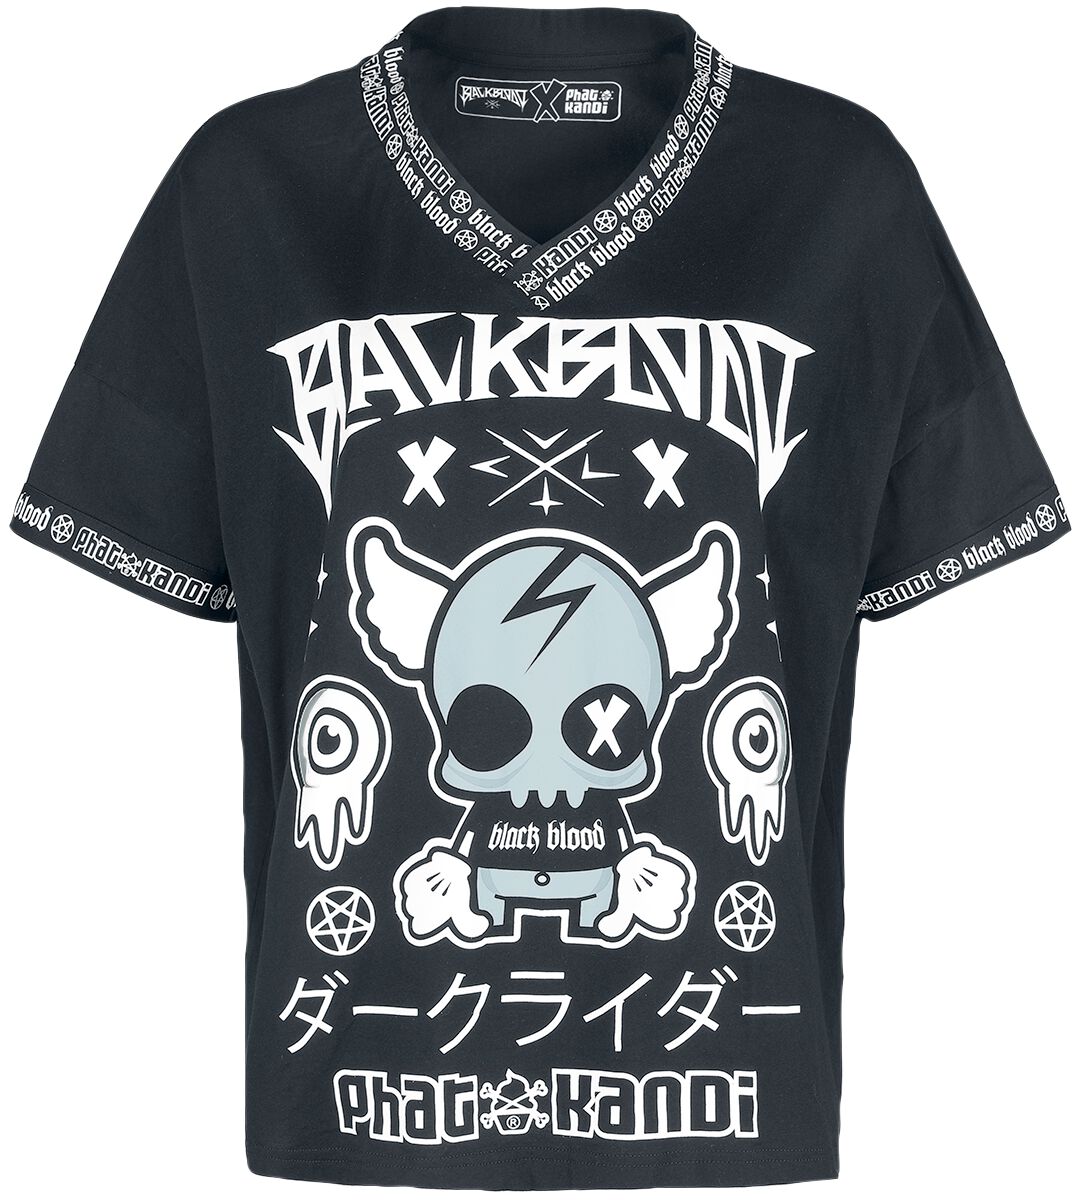 T-Shirt Manches courtes Gothic de Black Blood by Gothicana - Phat Kandi X Black Blood by Gothicana T